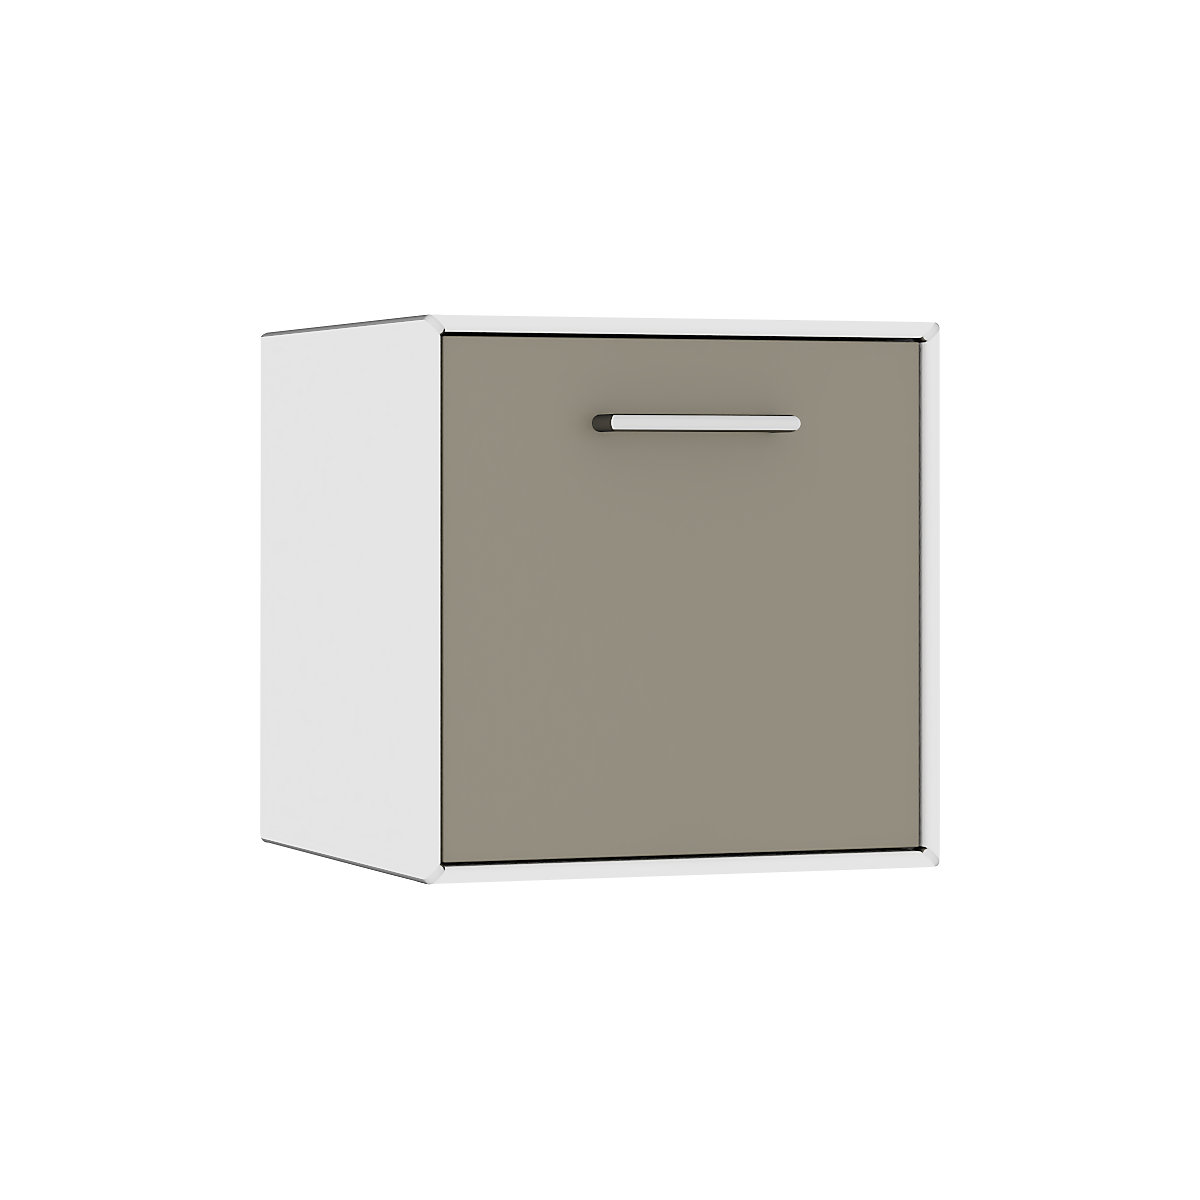 Egyes doboz, függő – mauser, 1 fiók, szélesség 385 mm, tiszta fehér / bézsesszürke-7